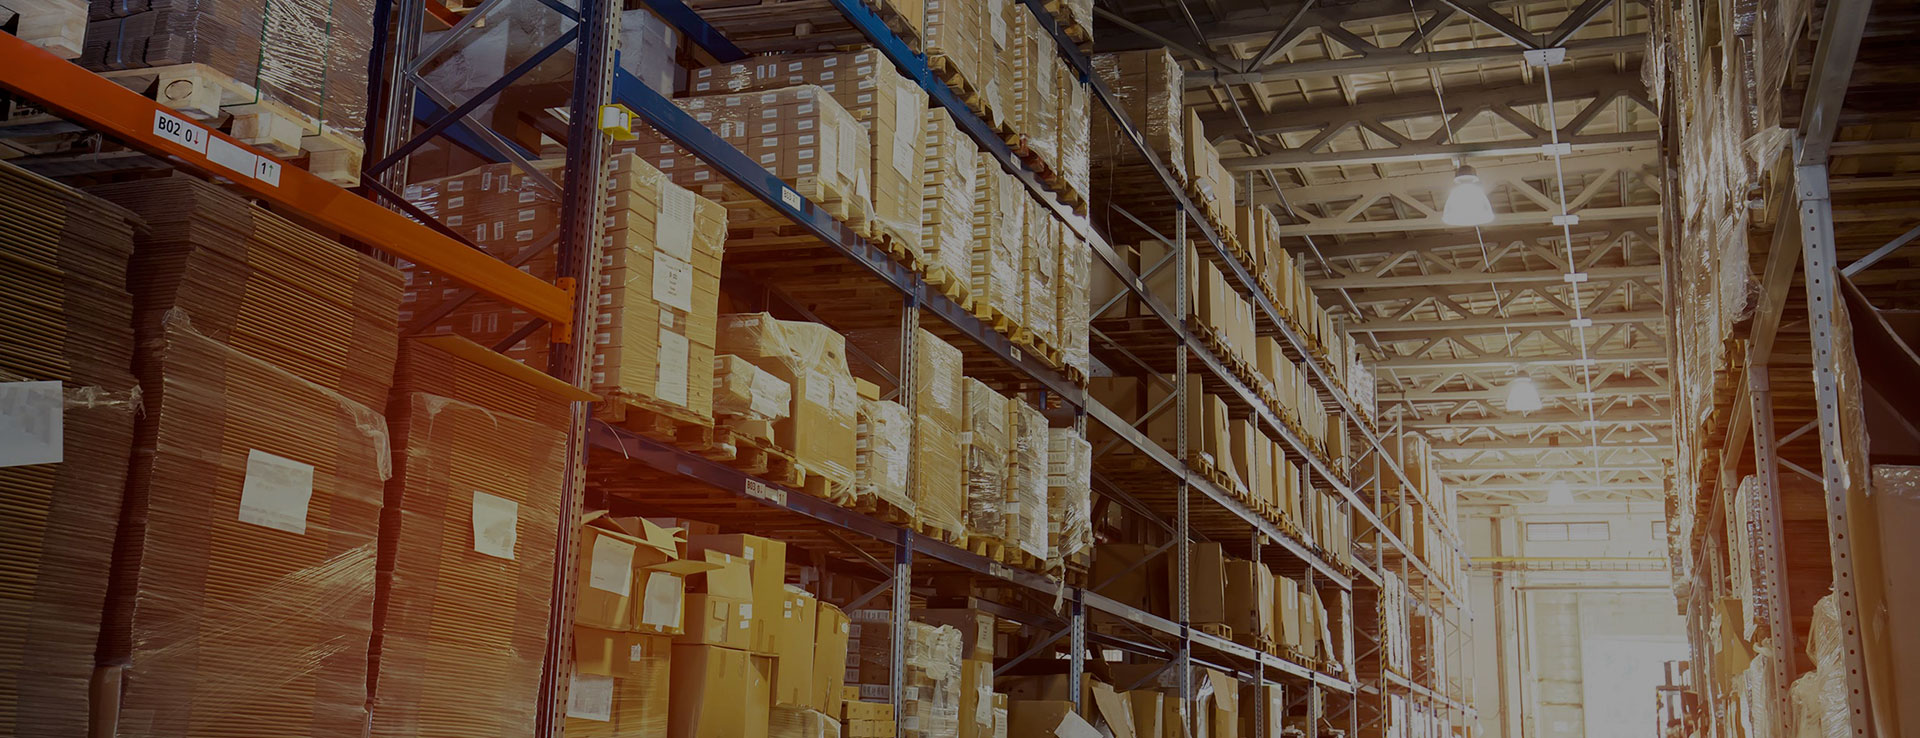 照明ガイドあなたに迅速に必要な商品を探すために倉庫業界